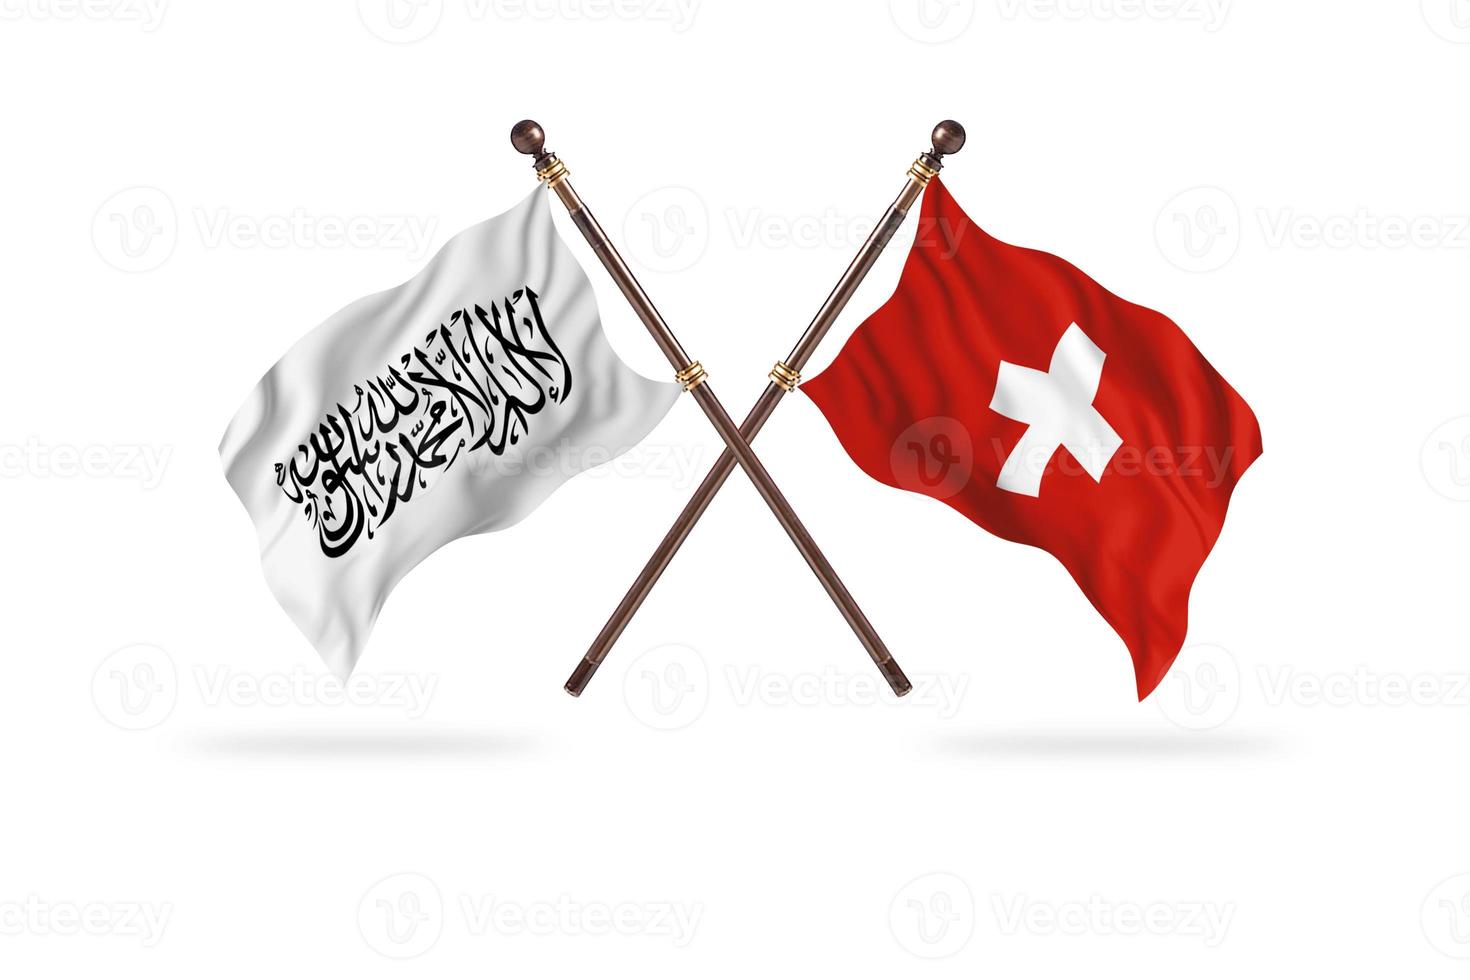 Émirat islamique d'afghanistan contre la suisse deux drapeaux de pays photo